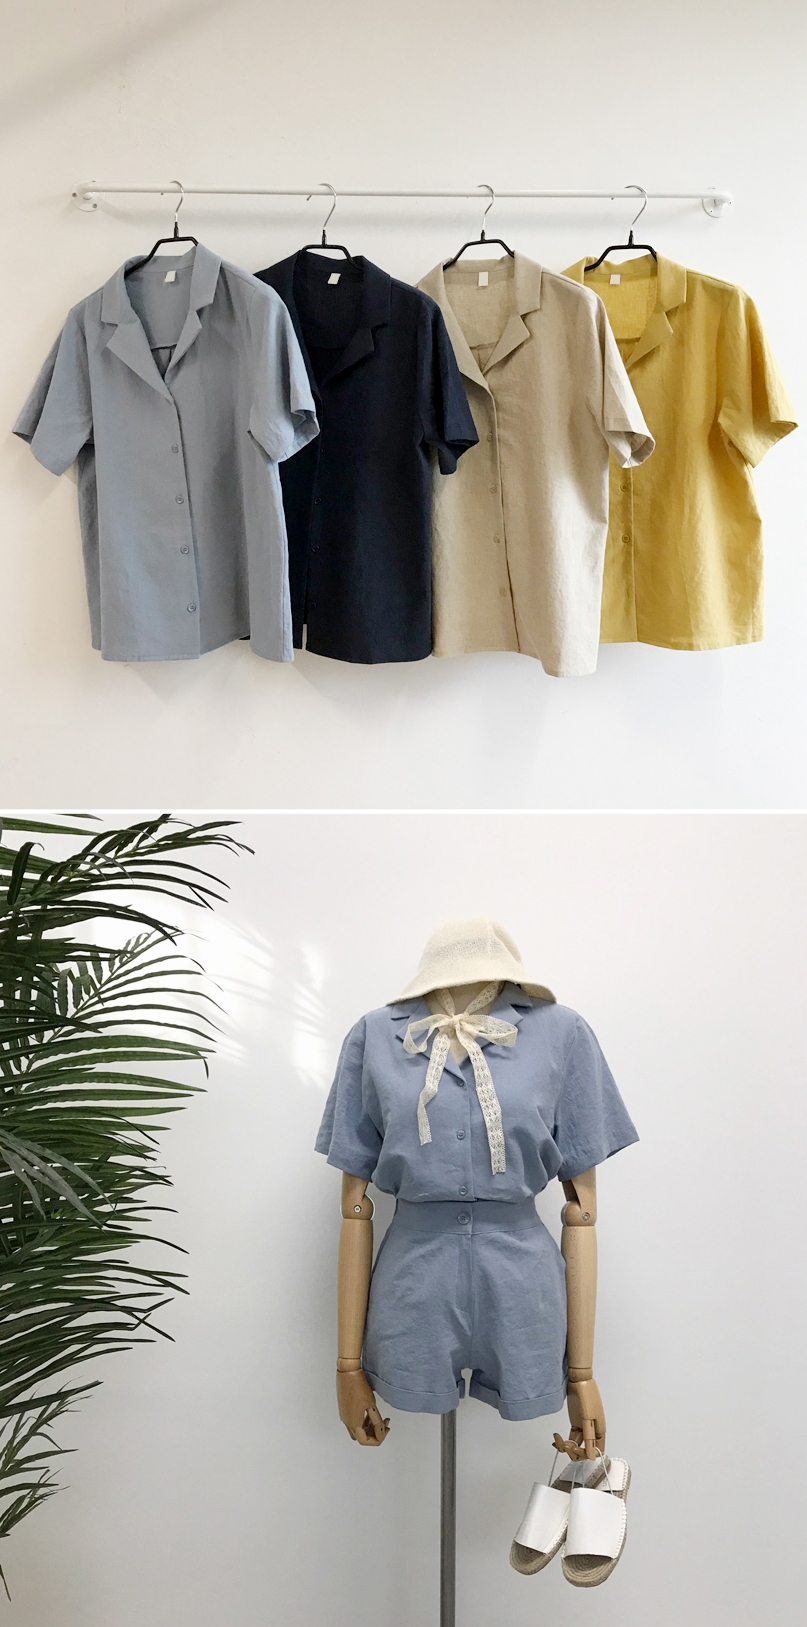 Đi học cũng nên diện đồ thật xinh, và đây là 5 kiểu áo sơmi xinh nức nở cho các nàng mùa Back To School - Ảnh 1.